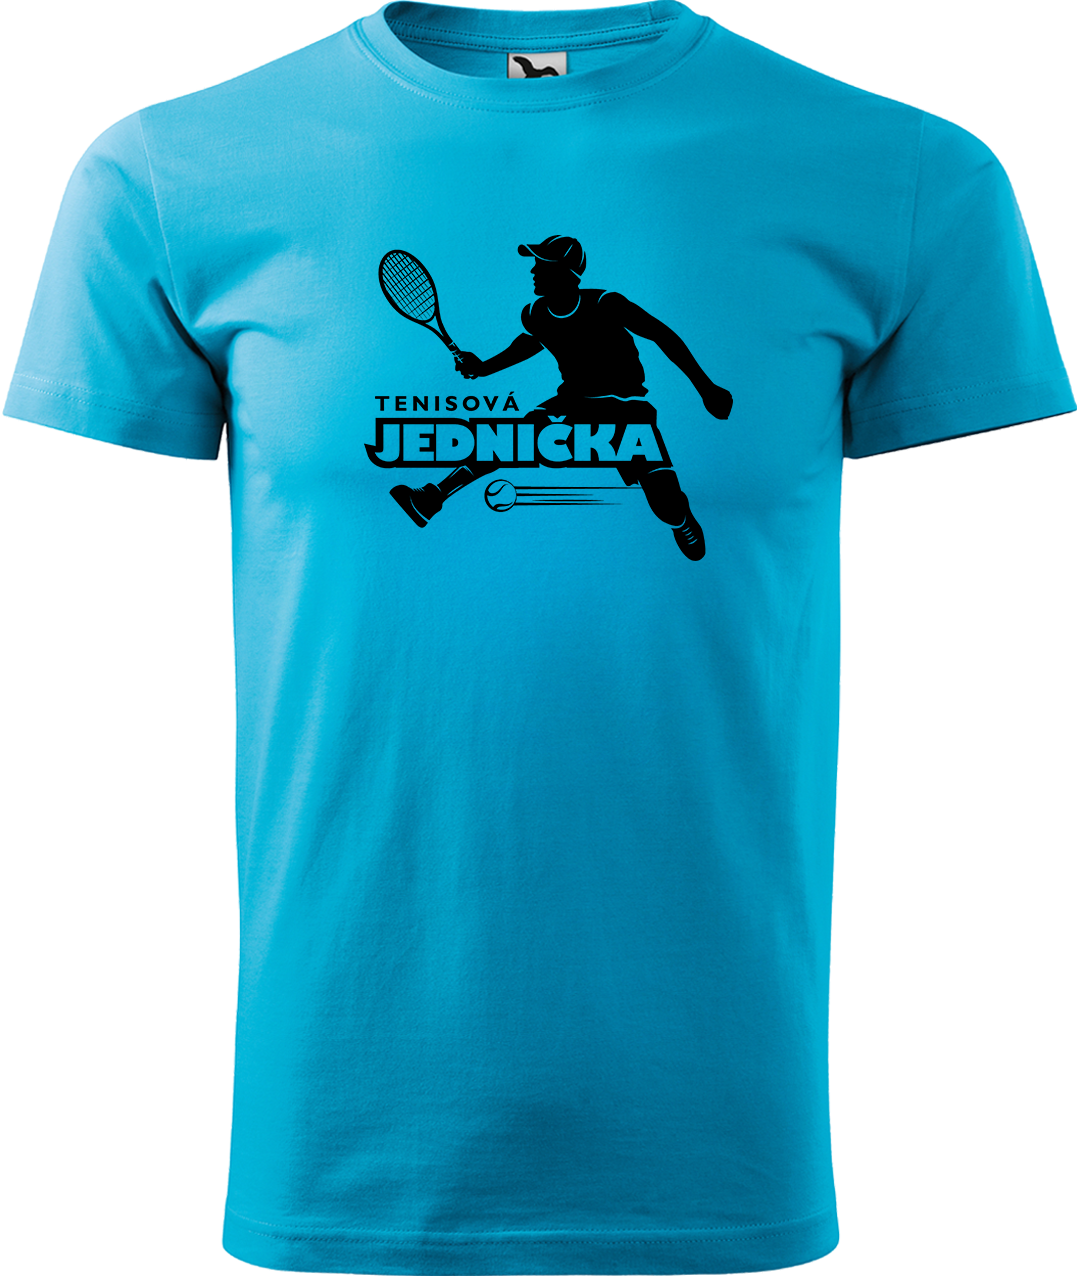 Tenisové tričko - Tenisová jednička Velikost: L, Barva: Tyrkysová (44)